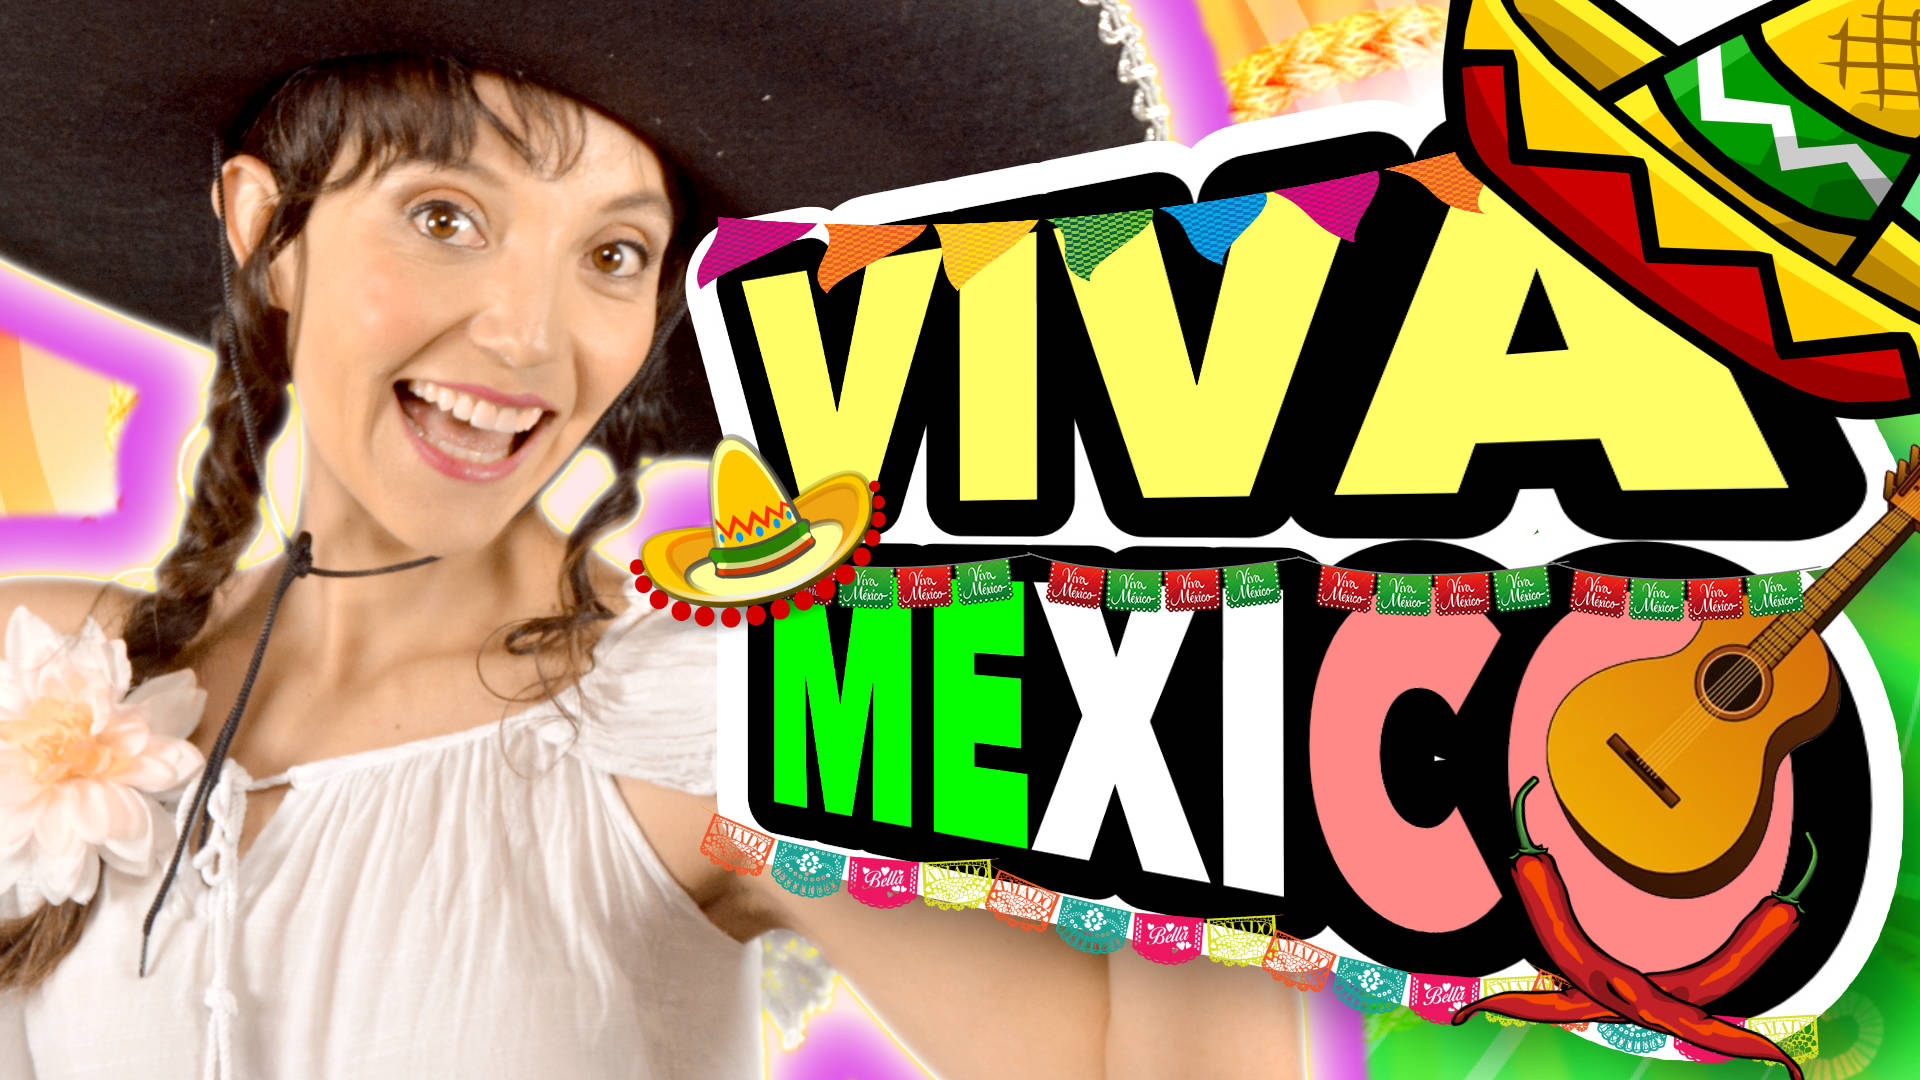 canciones mexicanas, orgullo mexicano, canciones que hablen de méxico, musica mexicana, canción del mariachi, canciones rancheras, canciones de México, canciones rancheras mexicanas